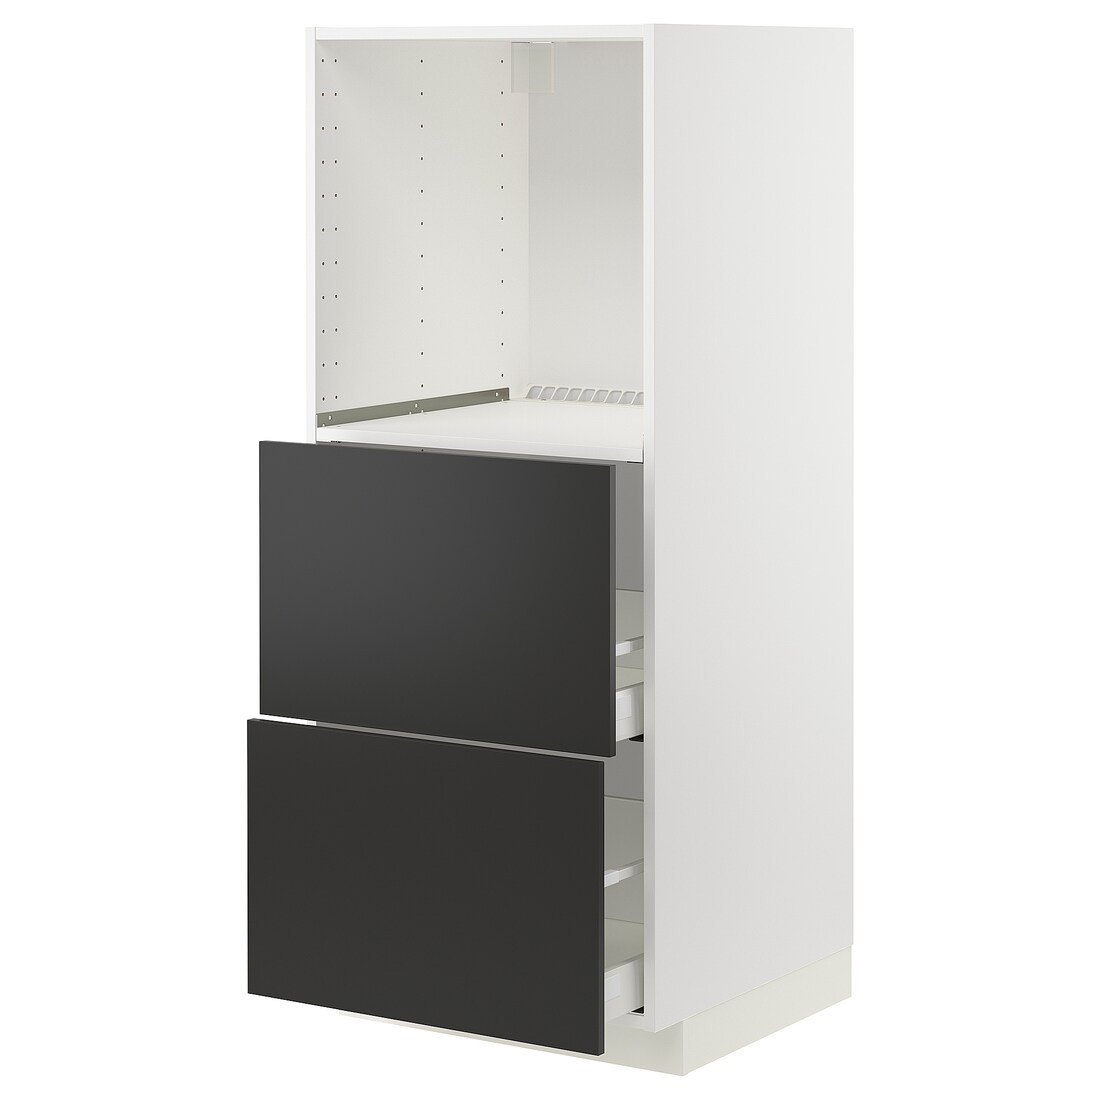 IKEA METOD МЕТОД / MAXIMERA МАКСИМЕРА Высокий шкаф с 2 ящиками для духовки, белый / Nickebo матовый антрацит, 60x60x140 см 39498503 394.985.03